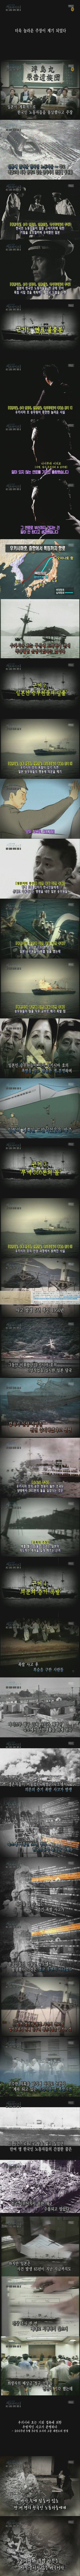 [서프라이즈] 타이타닉 호보다 더 많은 희생자를 낸 우키시마 호 침몰 사건 (억장이 무너짐) | 인스티즈